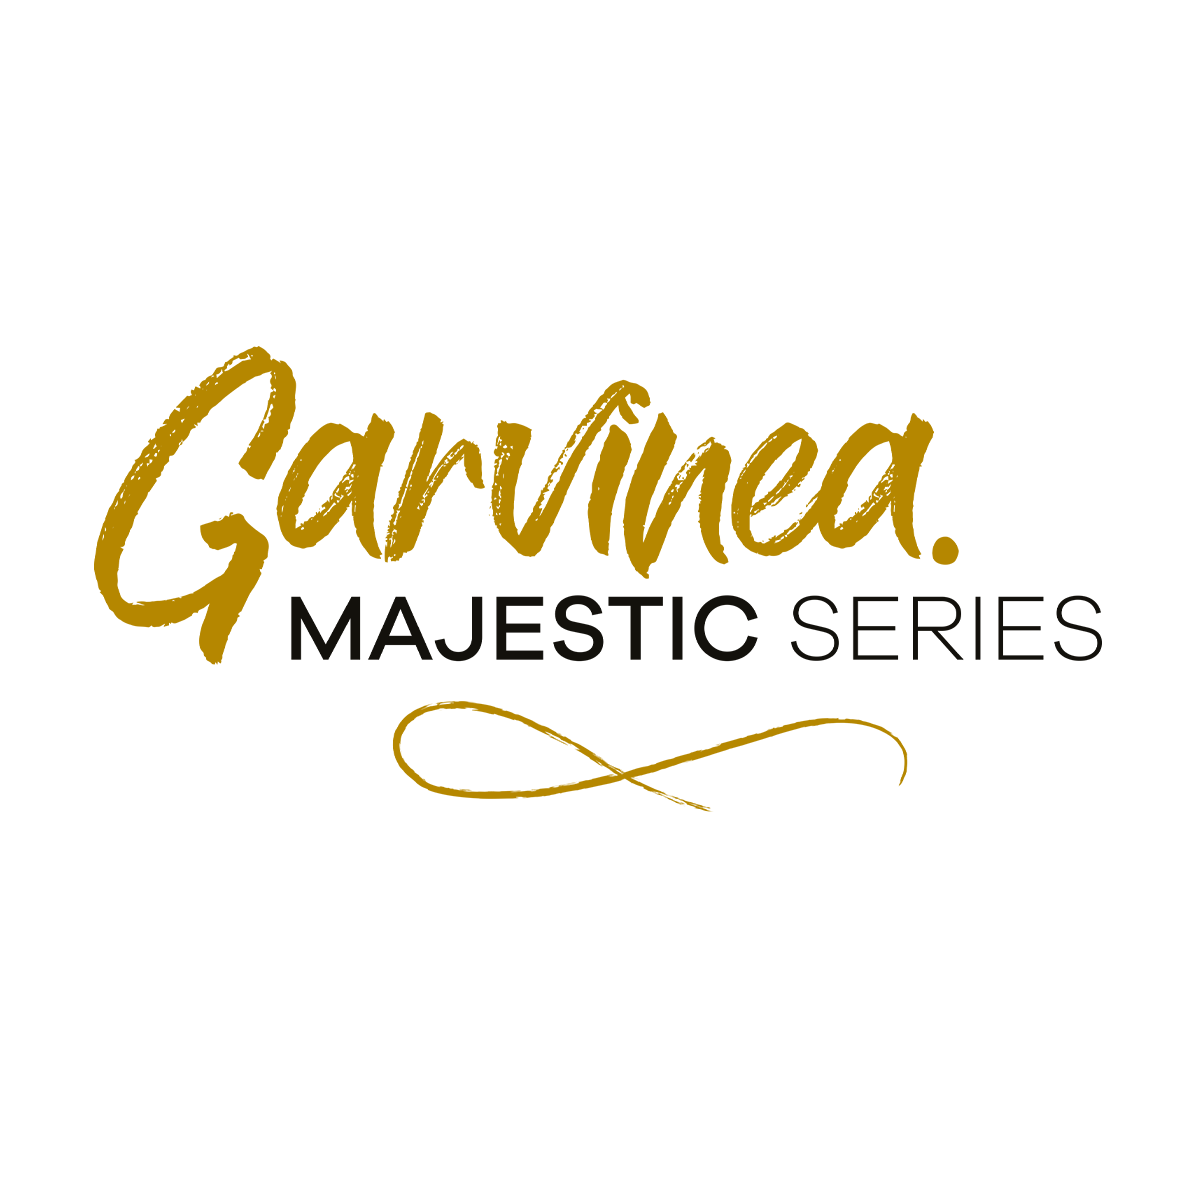 Garvinea Majestic Series HilverdaFlorist